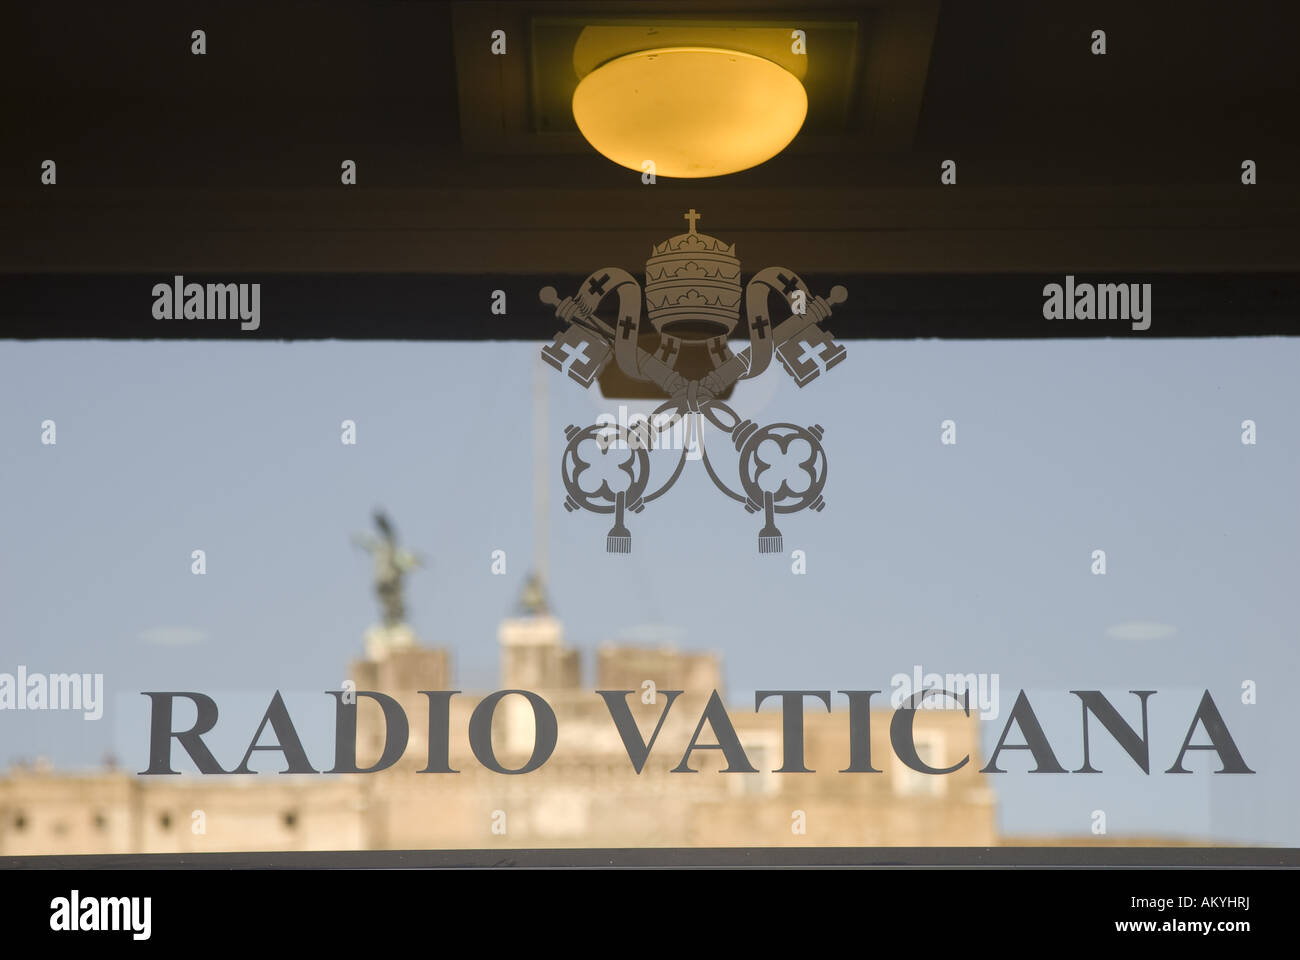 Ingresso alla Radio Vatikan, Radio Vaticana, nella porta si riflette il Castel Sant'Angelo, Roma, Vaticano, Italia Foto Stock